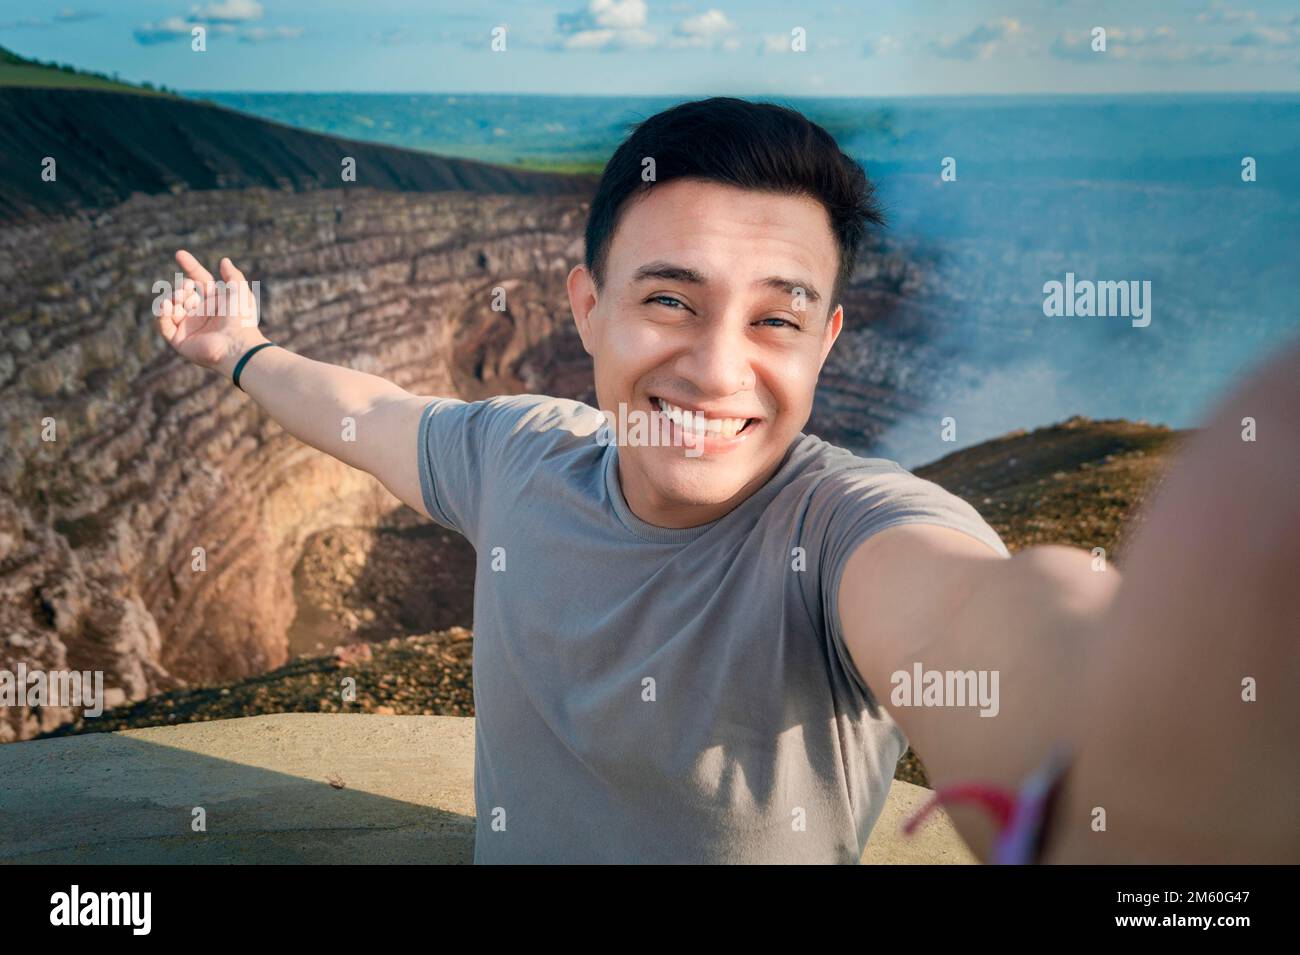 Turista haciendose un selfie en un mirador. Guapo turista tomando un selfie de vacaciones. Hombre aventurero haciendose un selfie en un mirador. Stock Photo